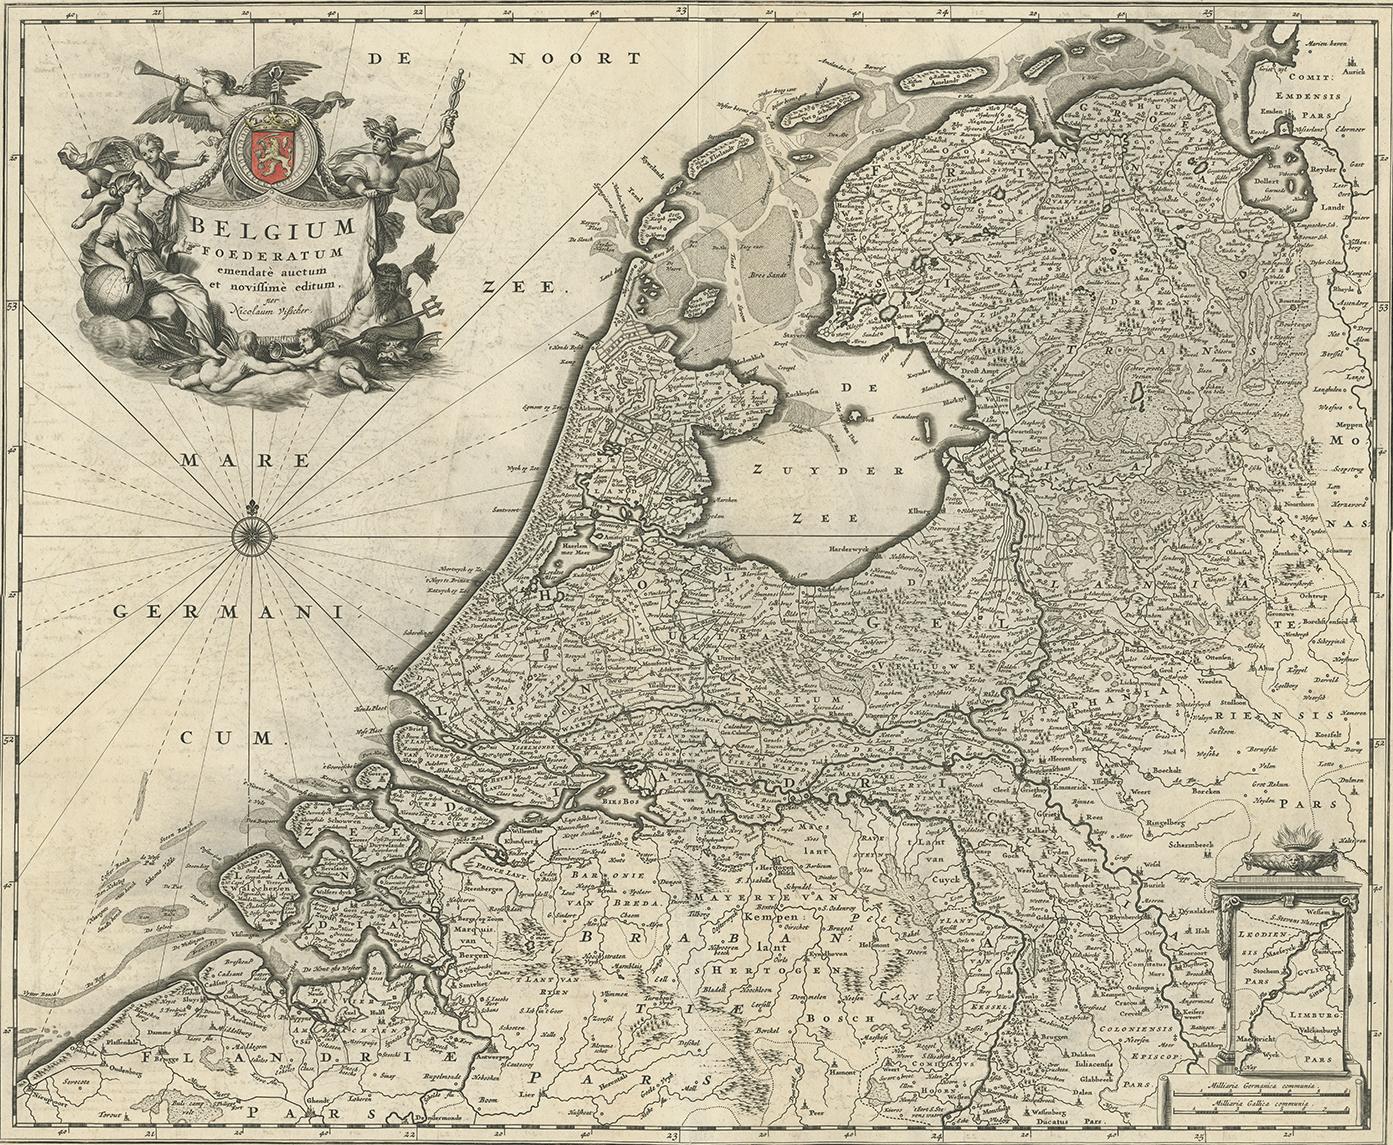 Antique map titled 'Belgium Foederatum emendate auctum et novissime editum (..)'. Published by N. Visscher, circa 1680.